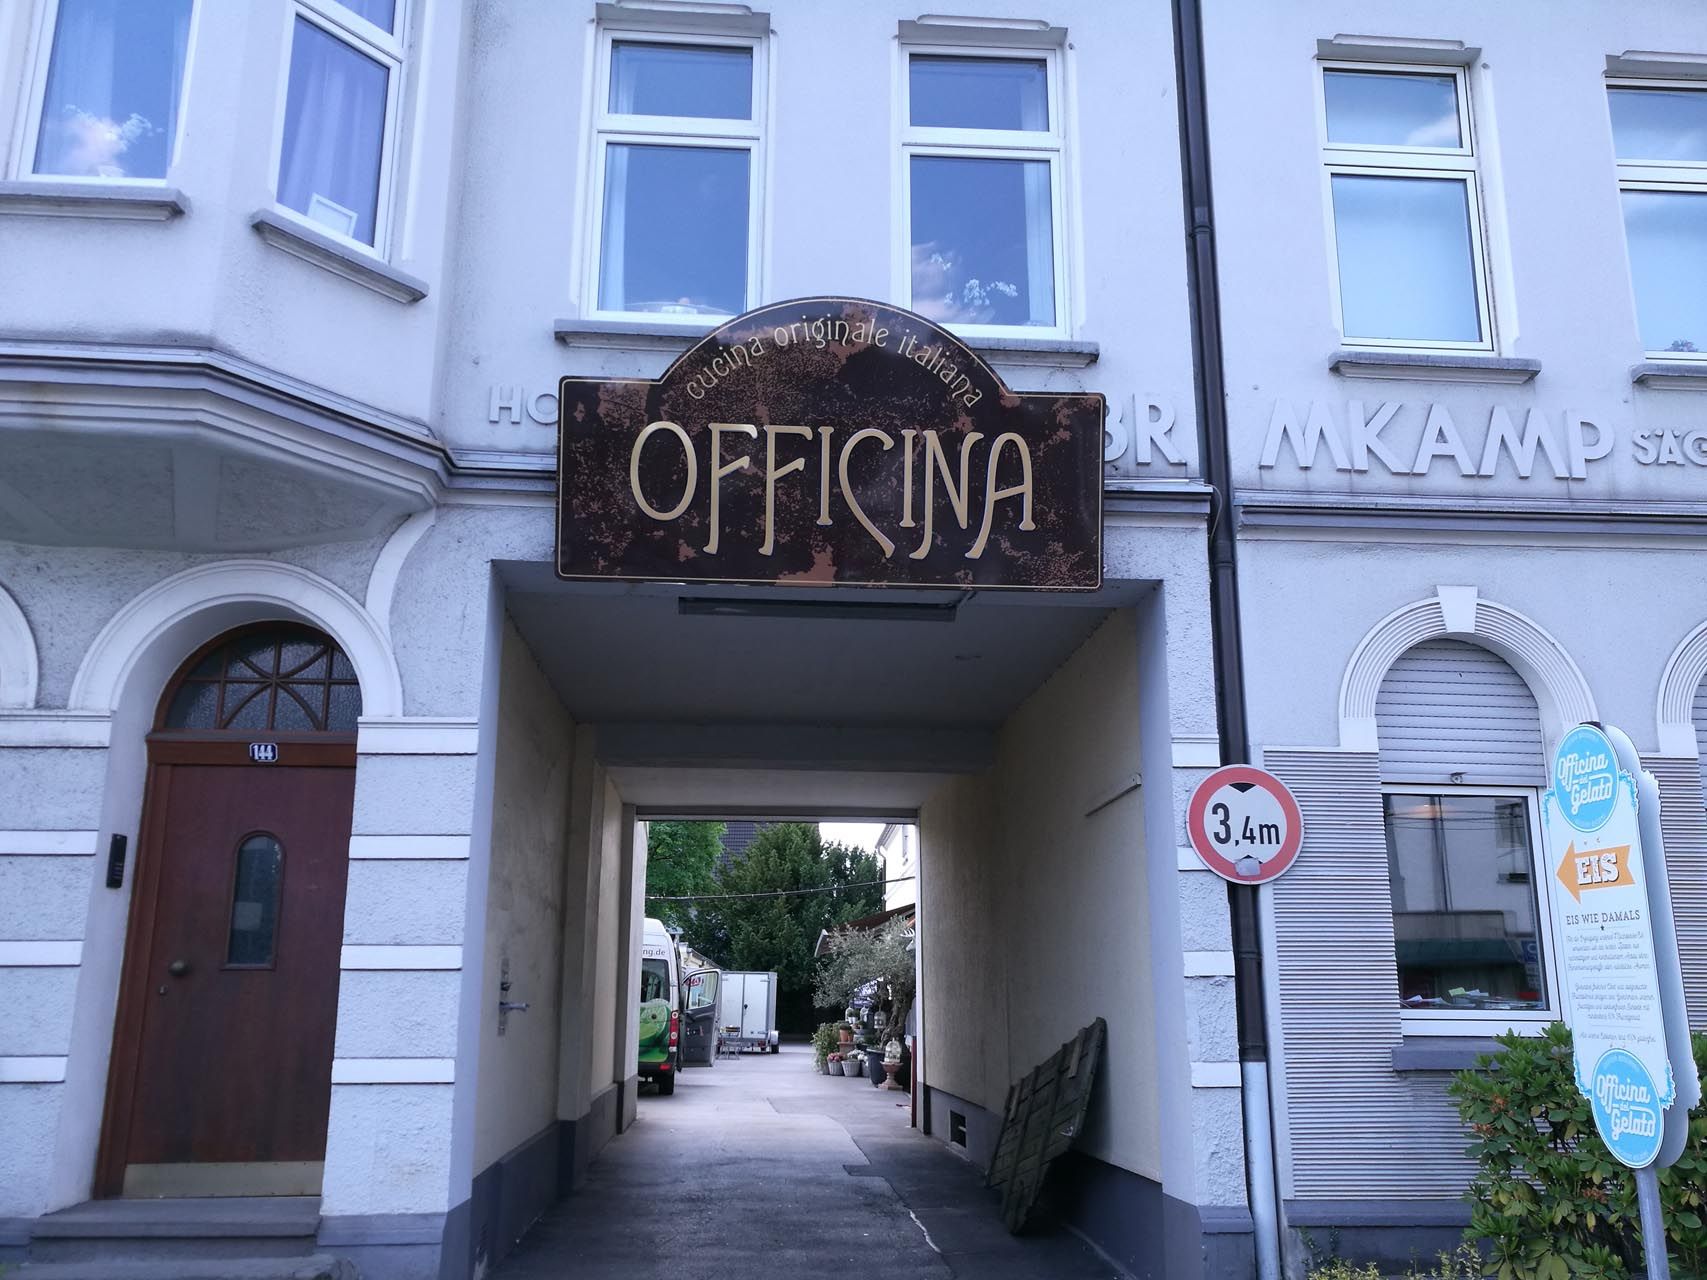 Ein Gebäude mit einem Schild darauf, das sagt Officina.